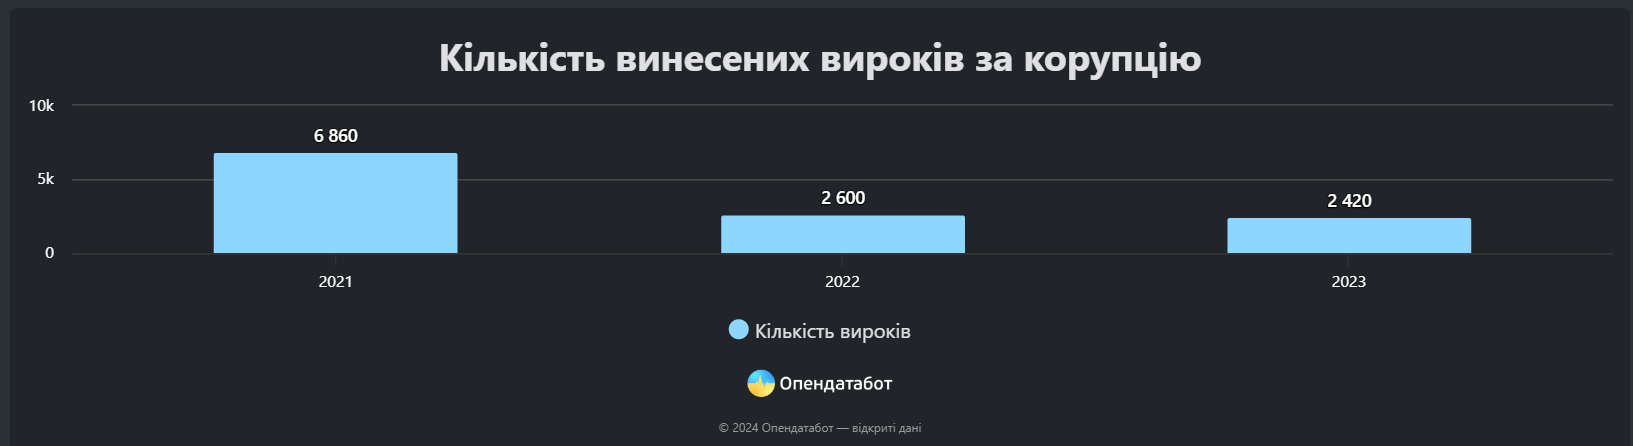 Одесщина заняла третье место по количеству коррупционеров